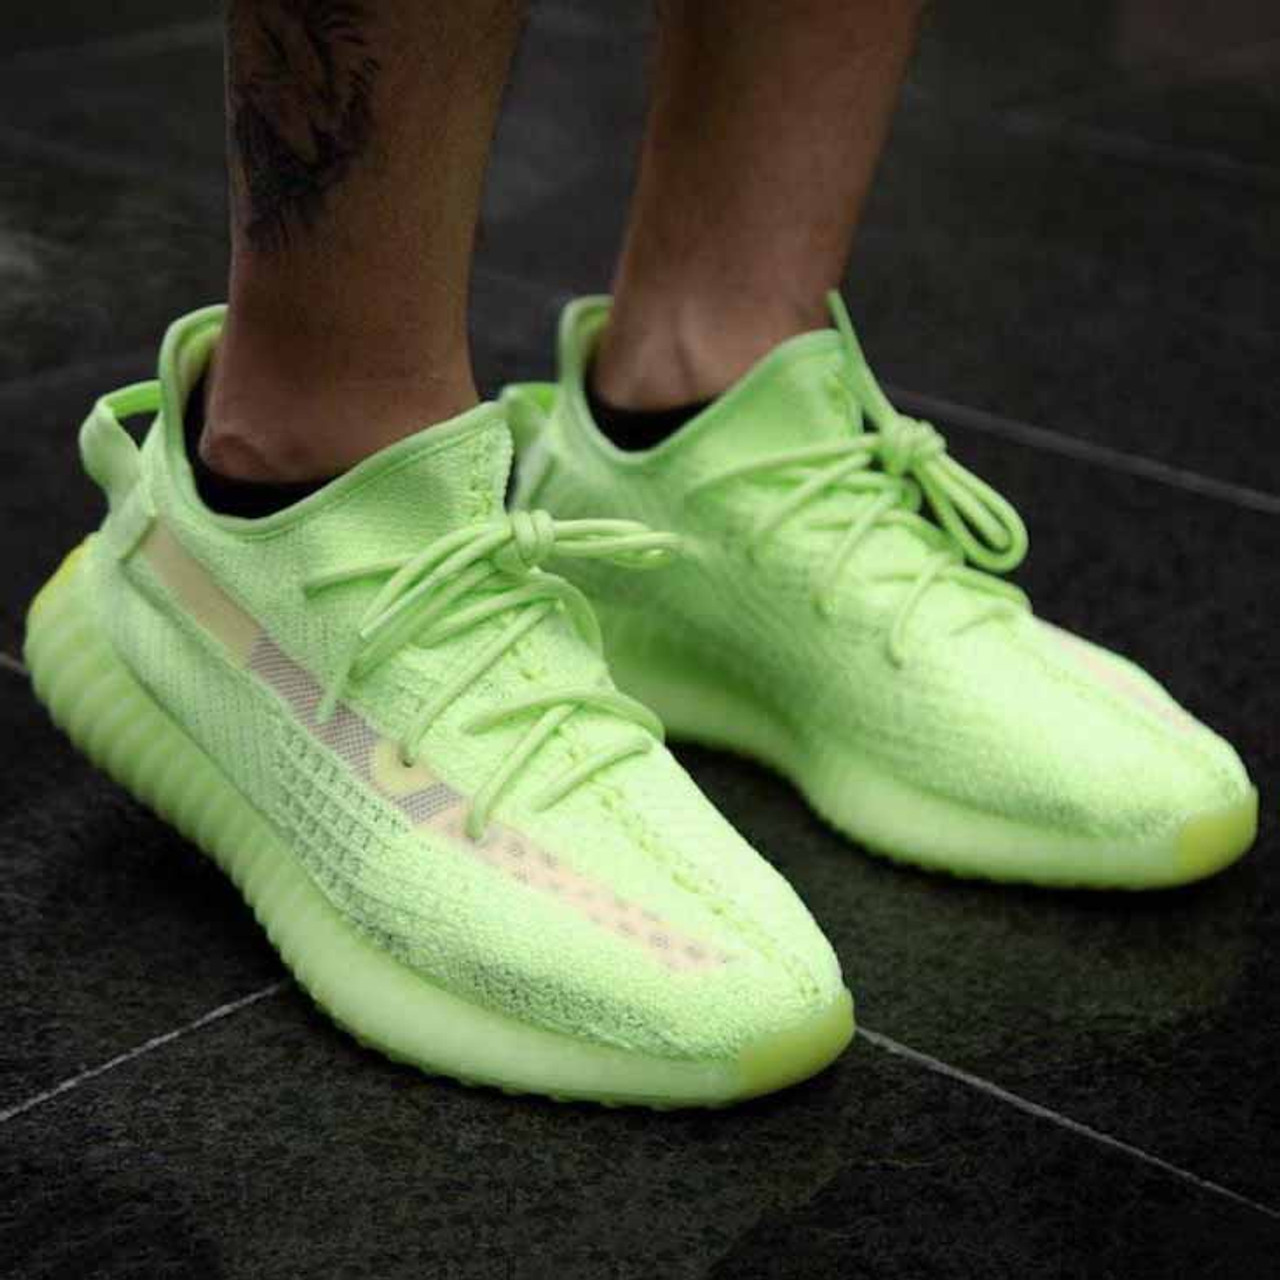 yeezy green sneakers